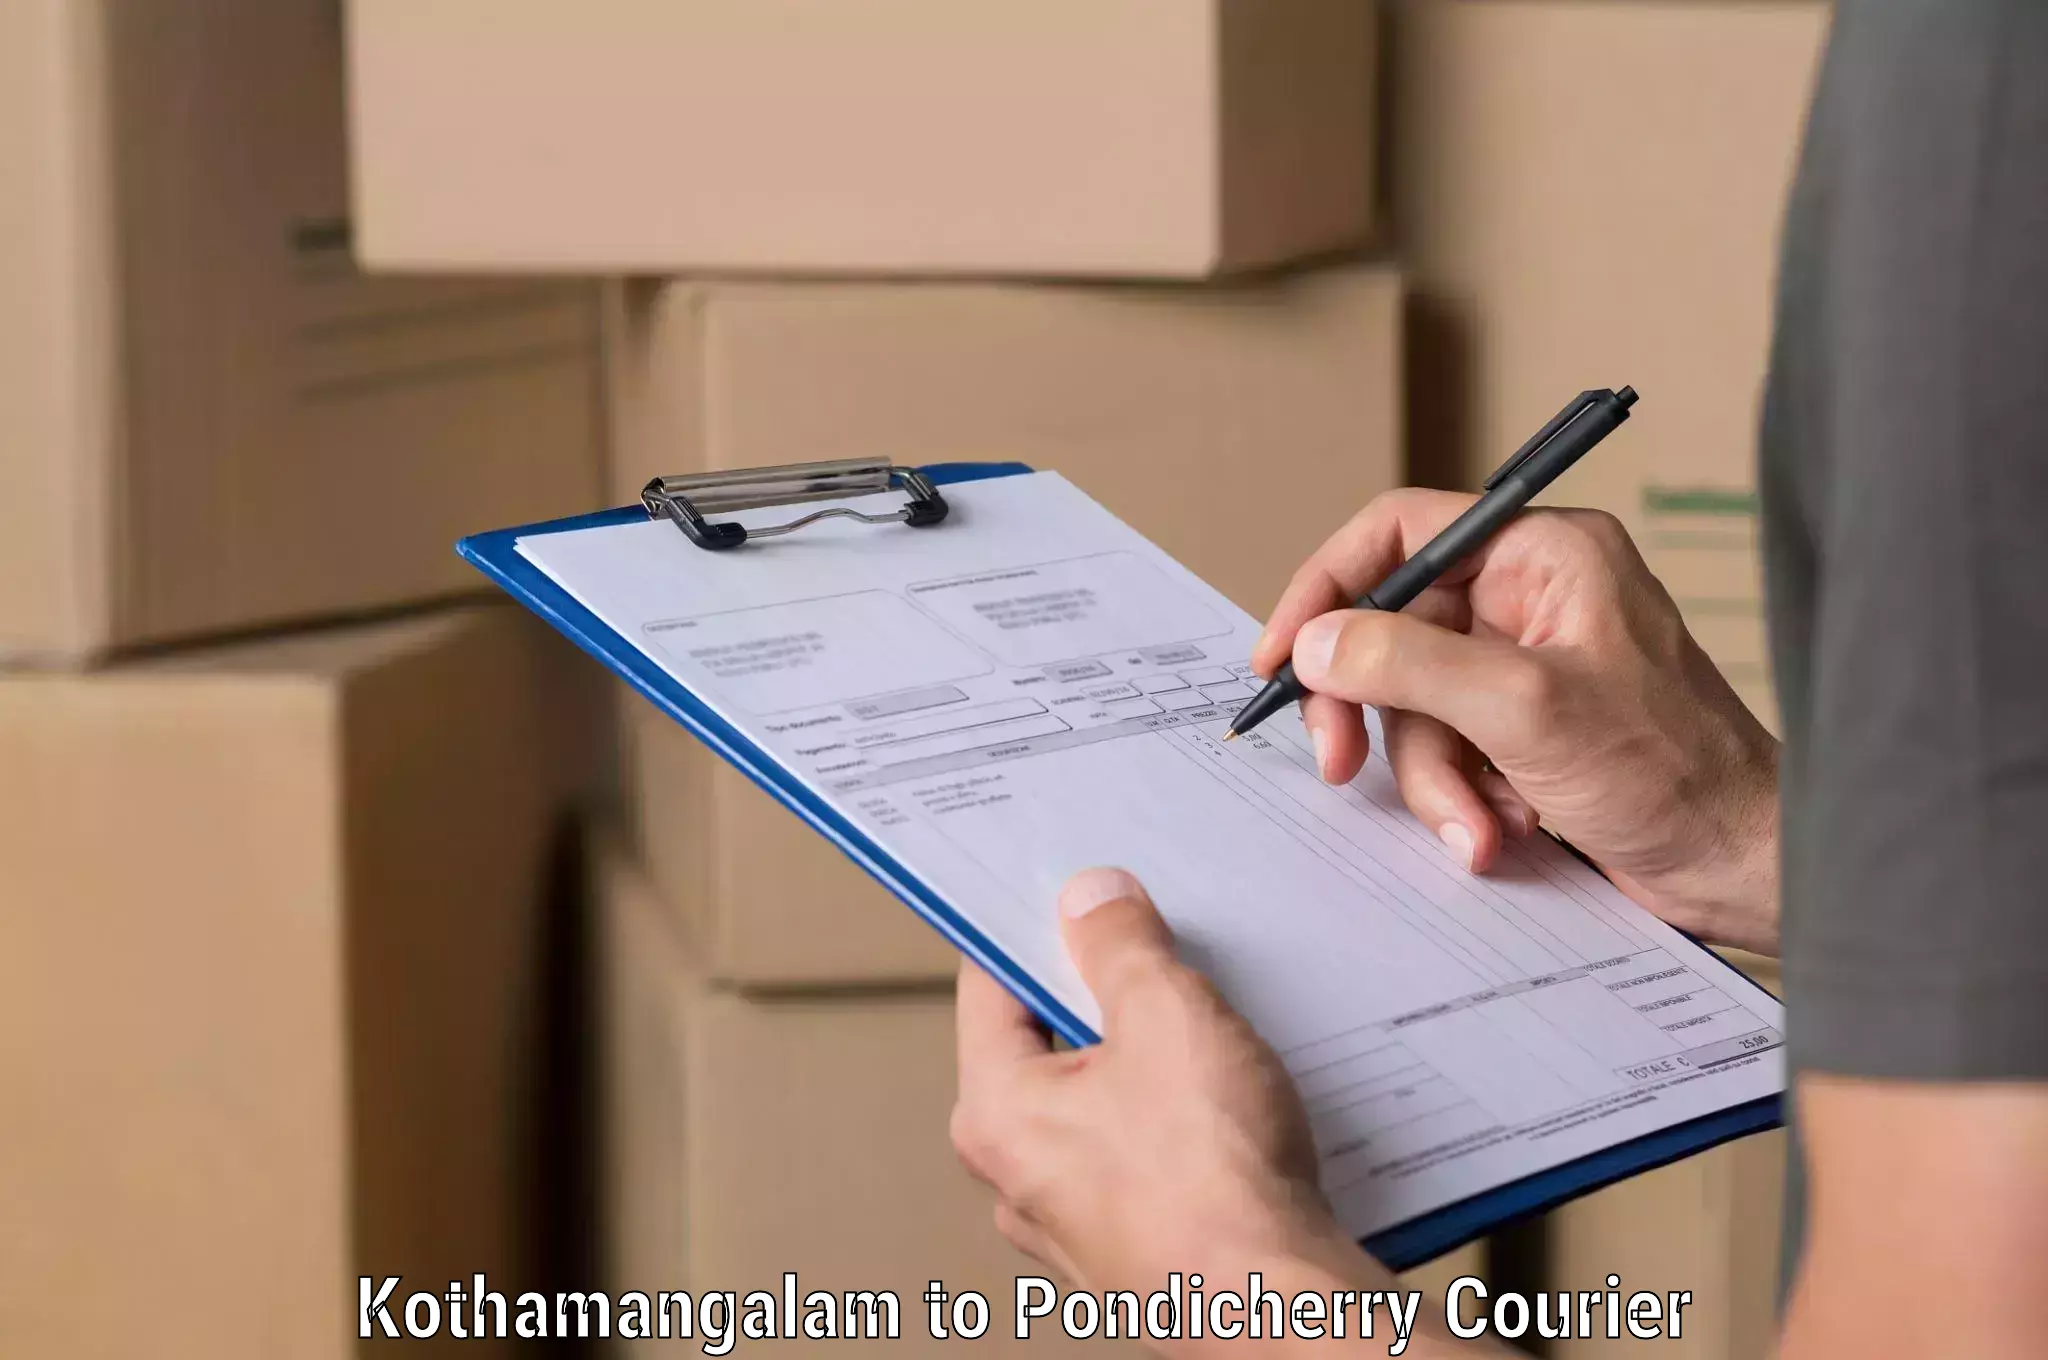 Professional courier handling Kothamangalam to Pondicherry University